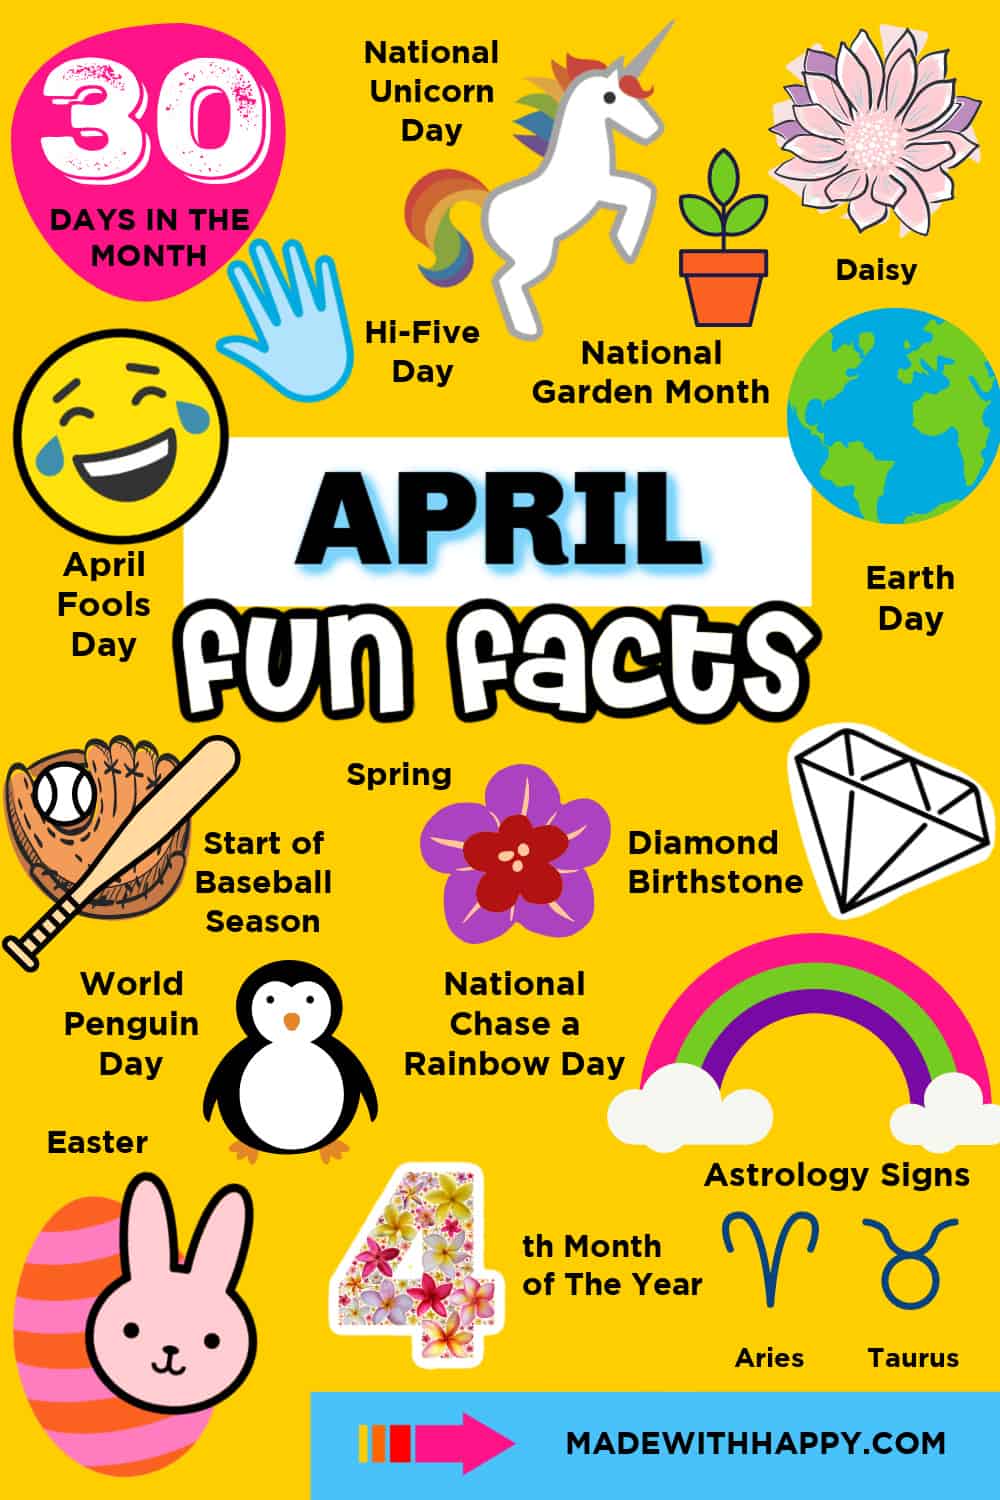 April Facts